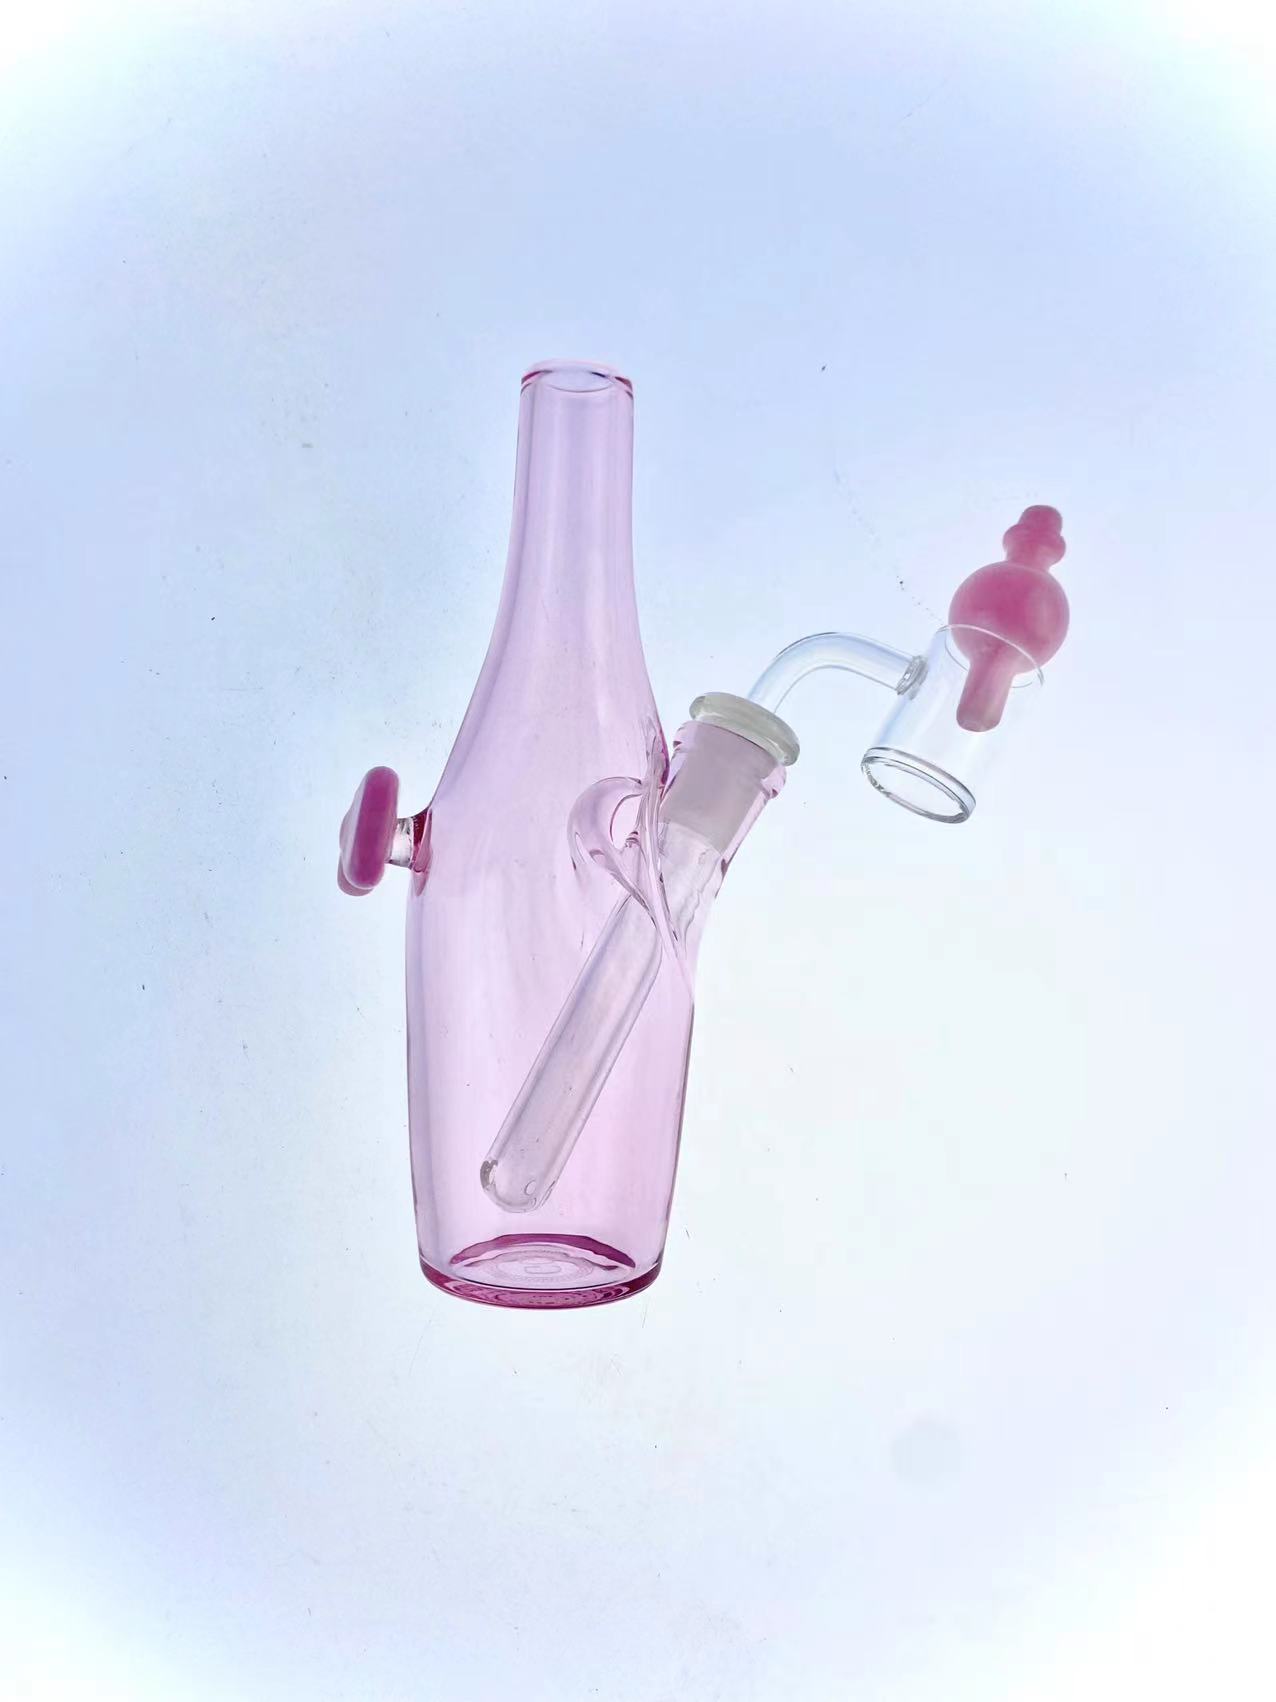 Sake-Flaschen-Rauchpfeife mit rosafarbener Farbe, fügen Sie eine einfarbige rosa Schleife, einen Banger am Stiel und eine Luftpolsterkappe hinzu